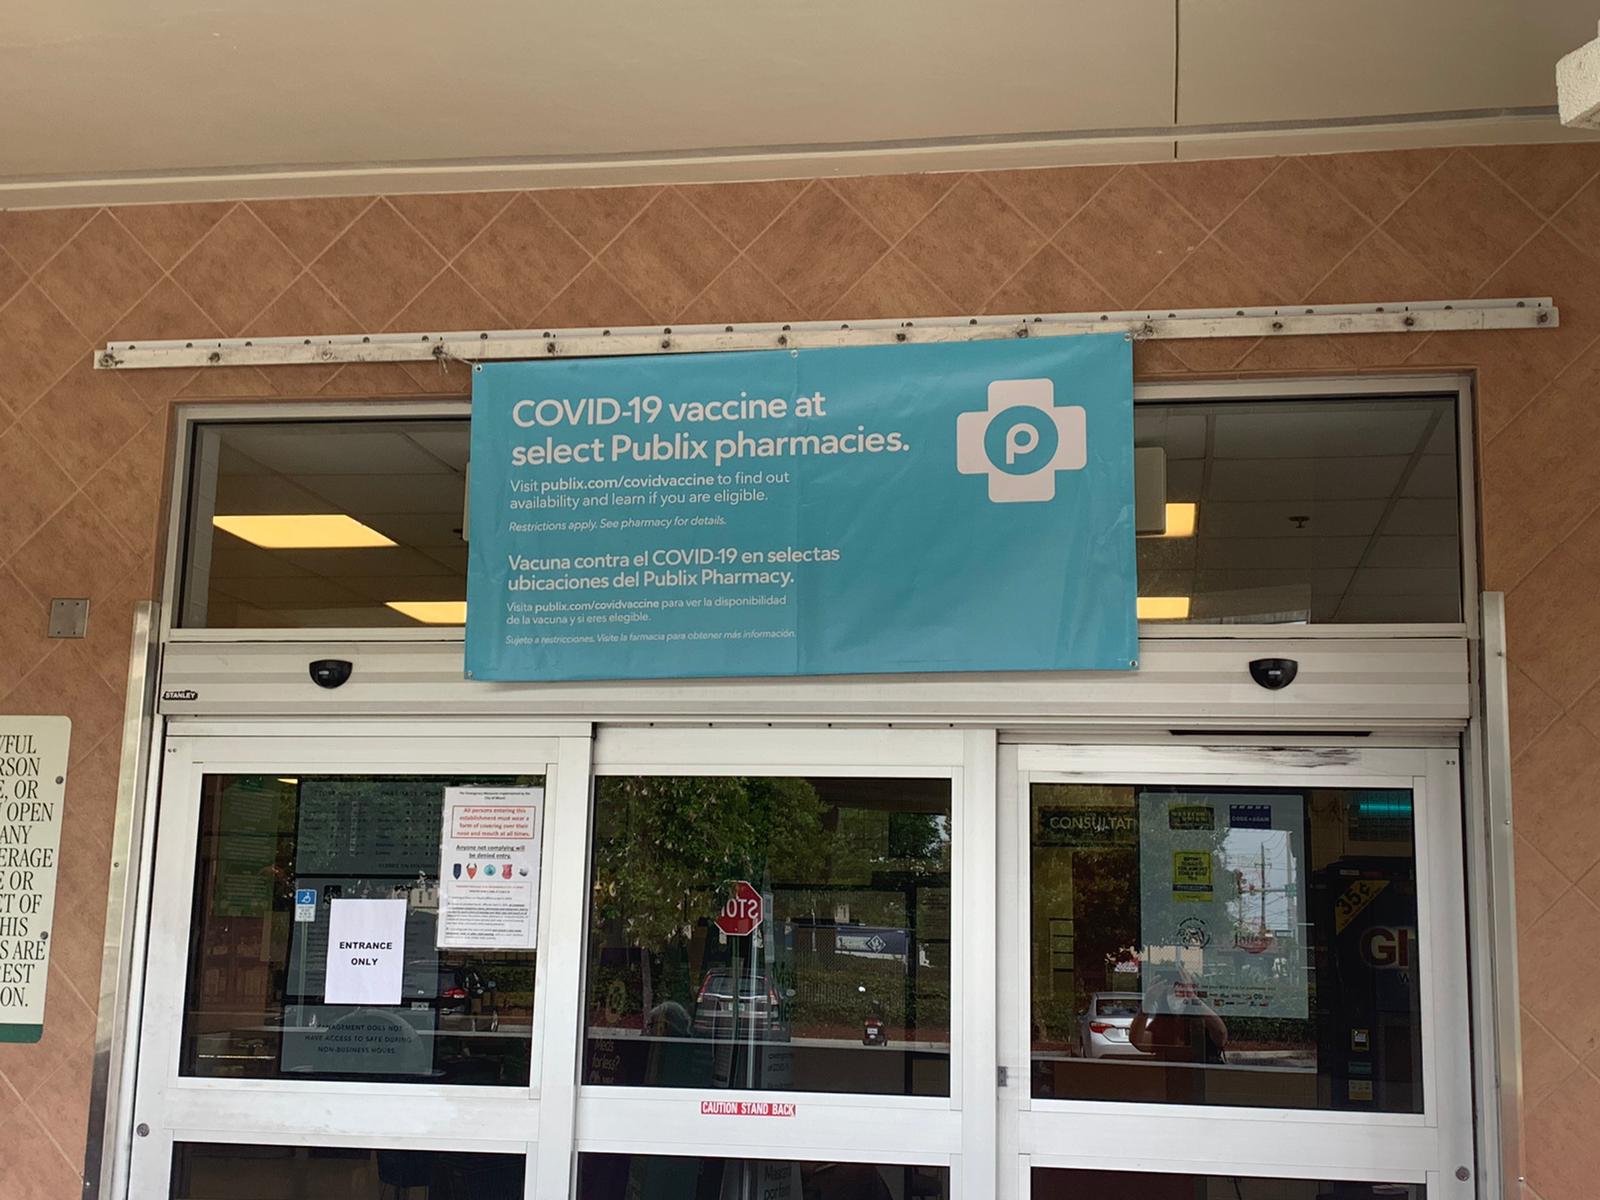 Uno de los supermercados Publix en Miami donde comenzaron a vacunar a mayores de 65 años contra el coronavirus (Soledad Cedro / Infobae)